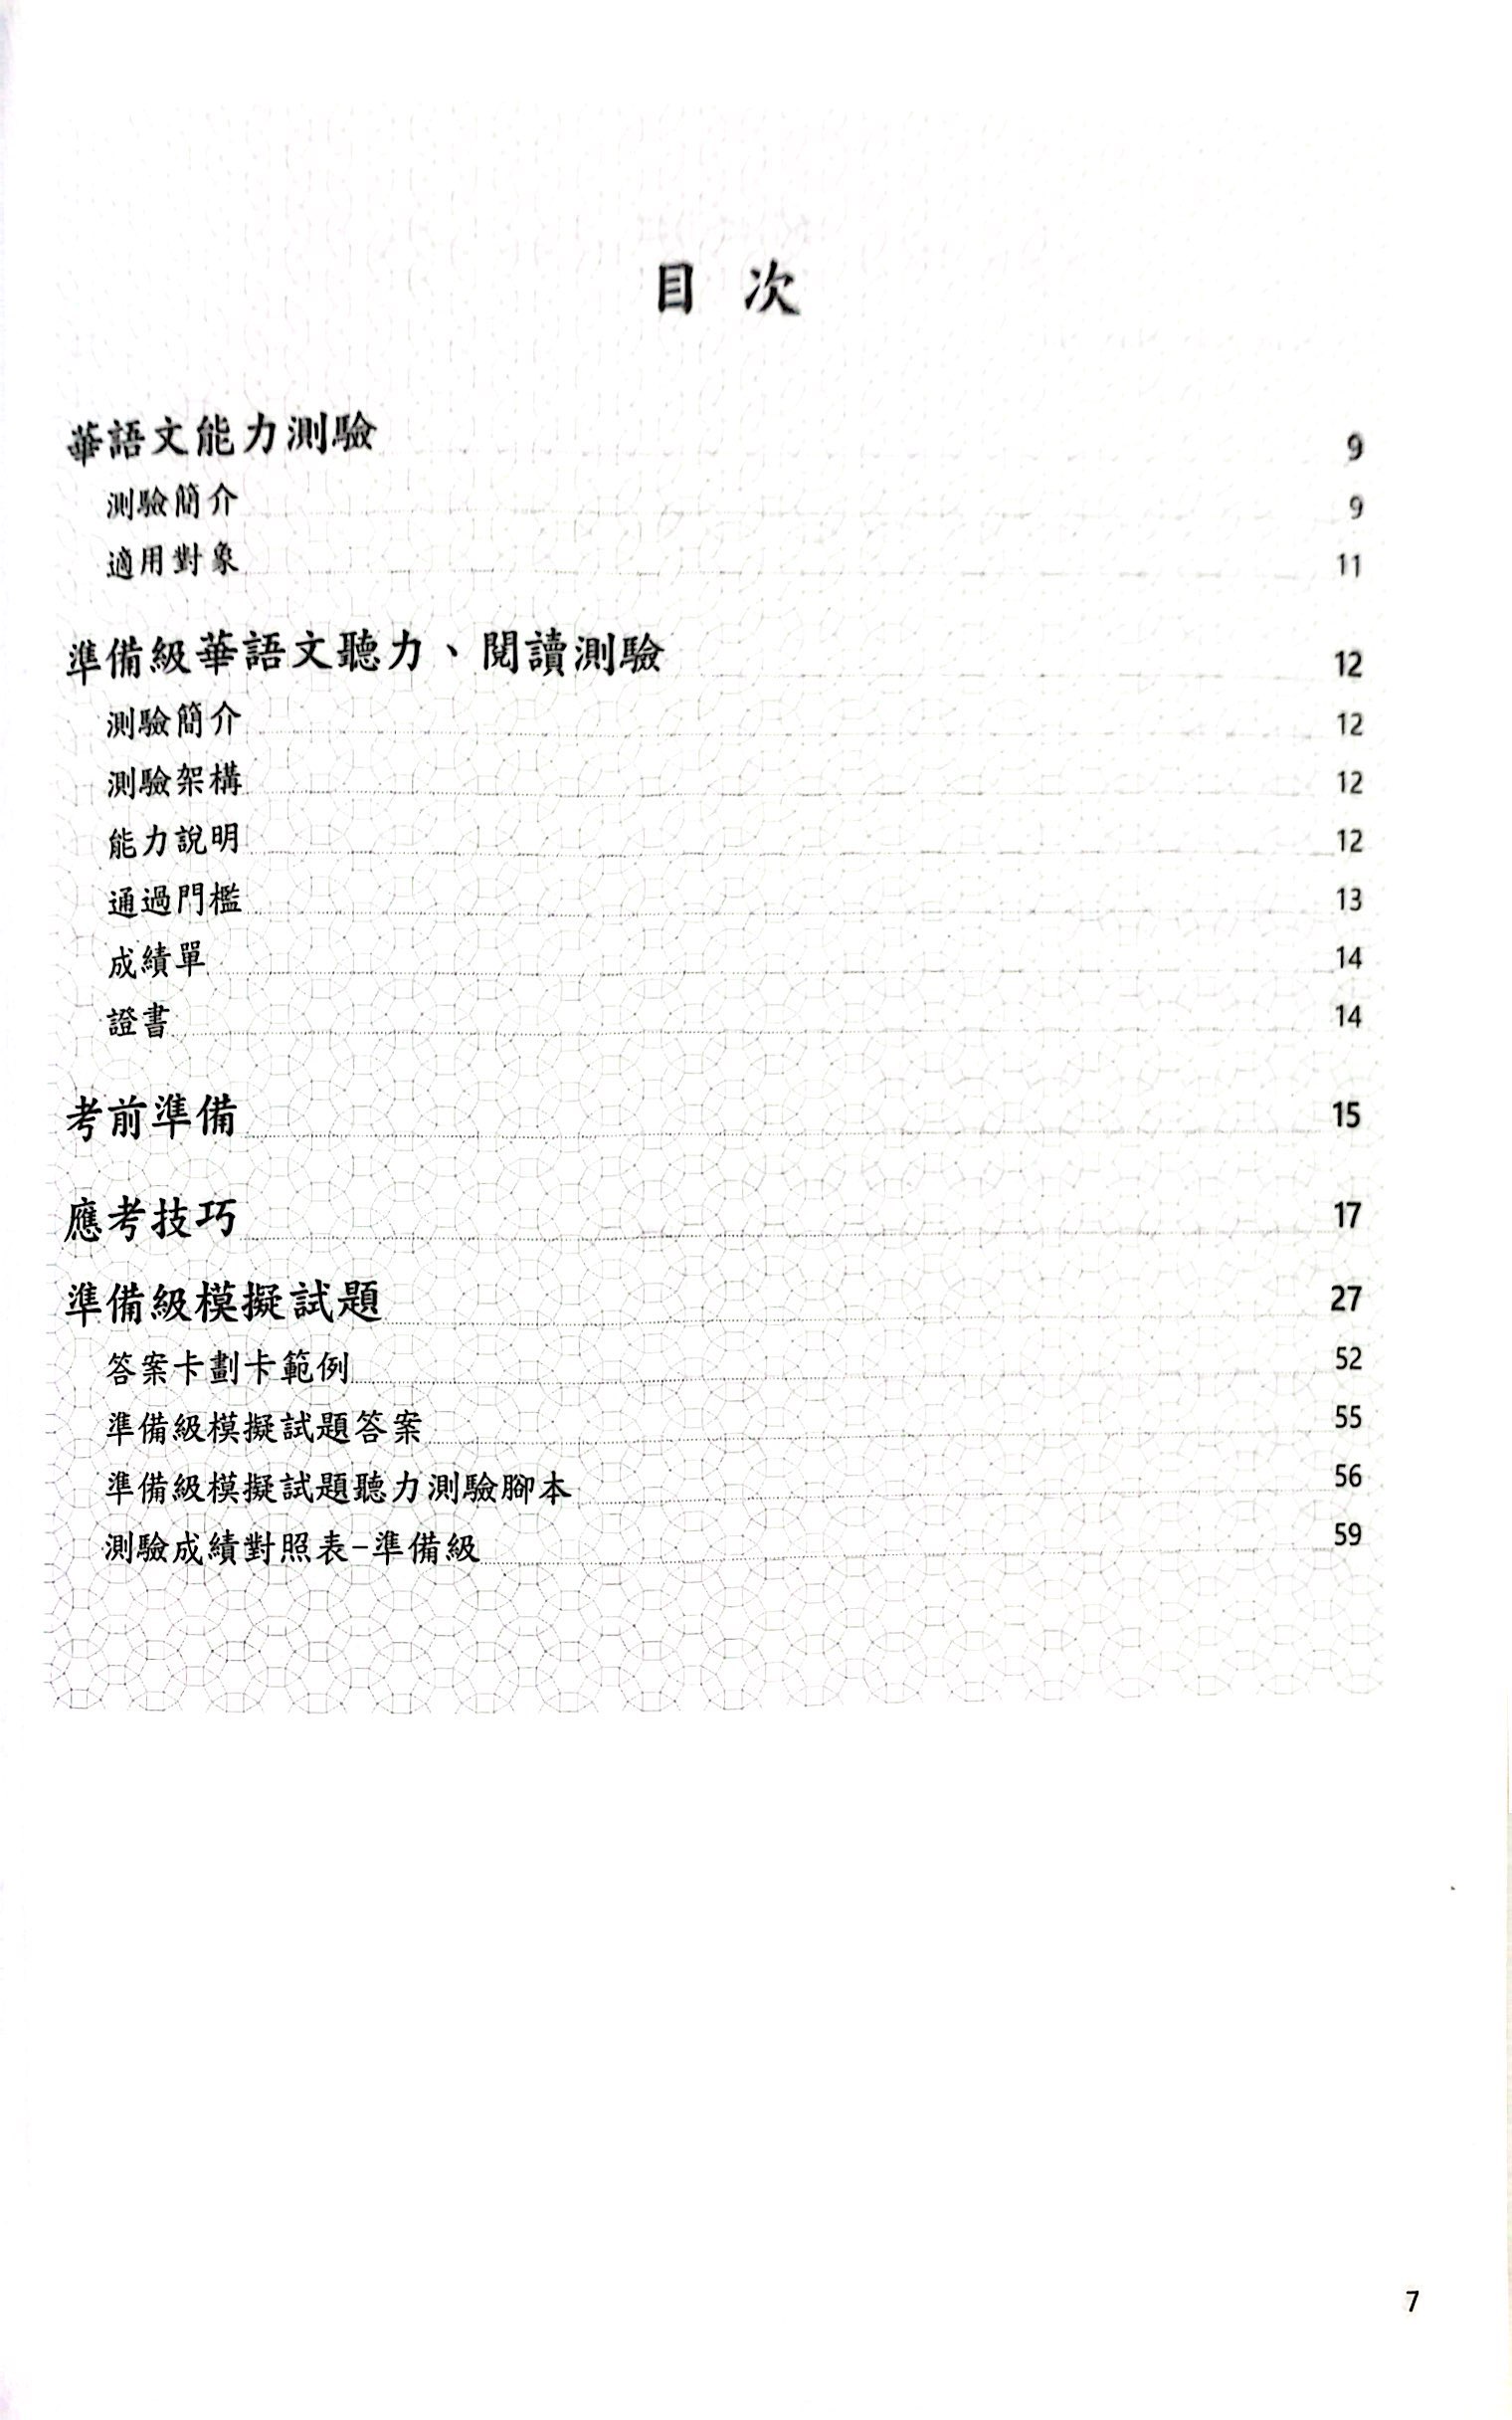 Đề Thi Mô Phỏng Đề Thi Năng Lực Hoa Ngữ - Cấp Độ Chuẩn Bị 1 PDF